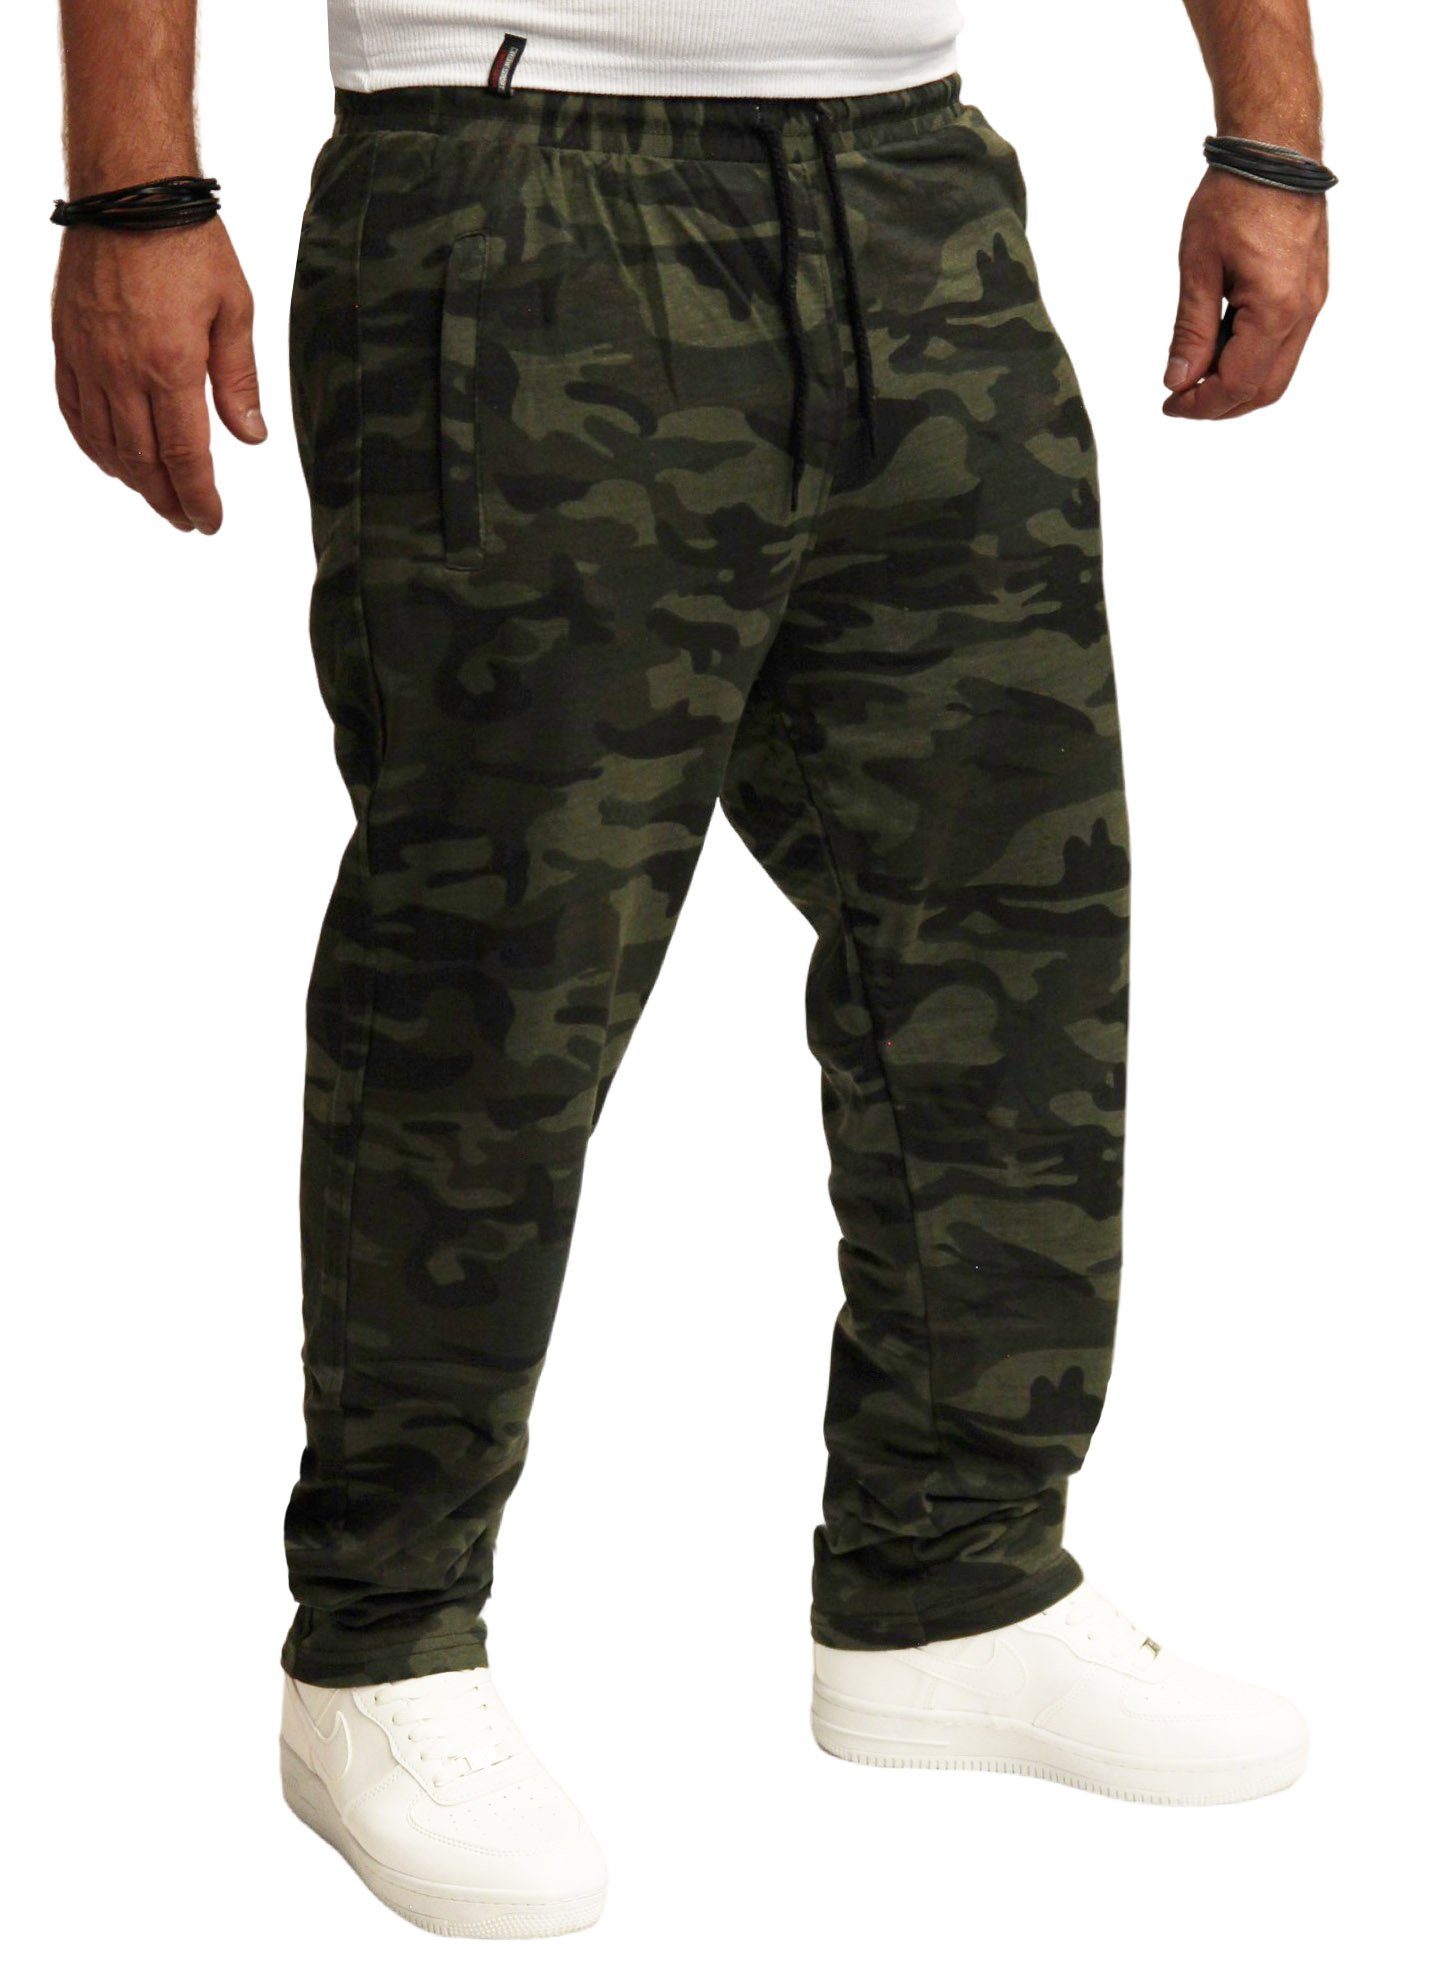 Army Jogginghose Tarn Jogginghose RMK (2006) Camouflage-Dunkel Hose Herren Camouflage Trainingshose Fitnesshose